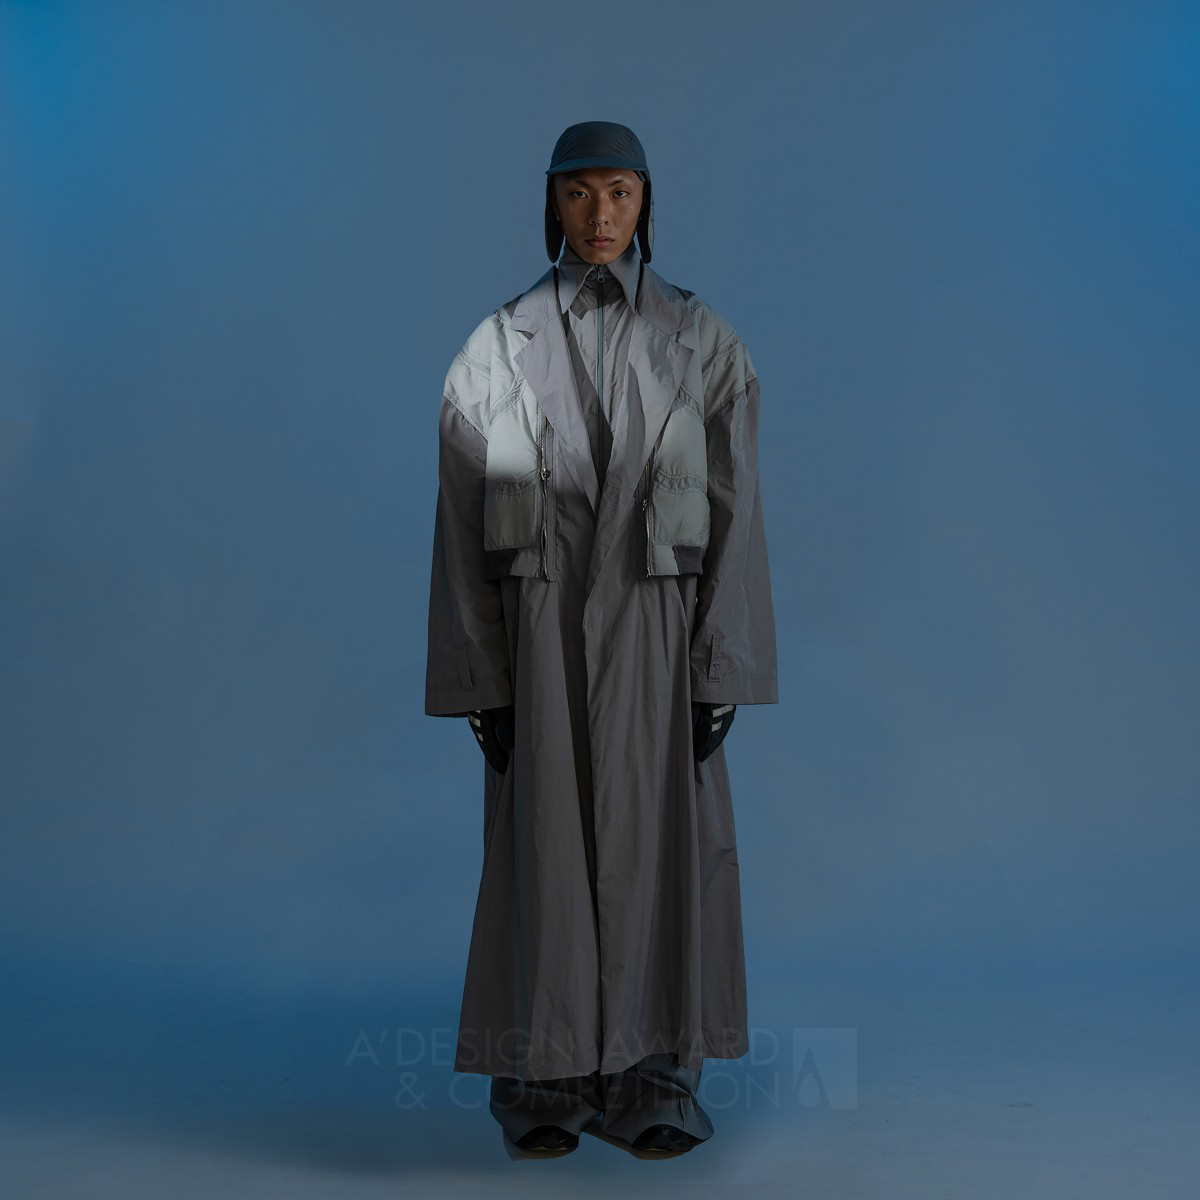 Yi Tung Hung'dan Kendini Koruma Mekanizması: Bilgi Patlamasına Karşı Tasarlanmış Giysiler